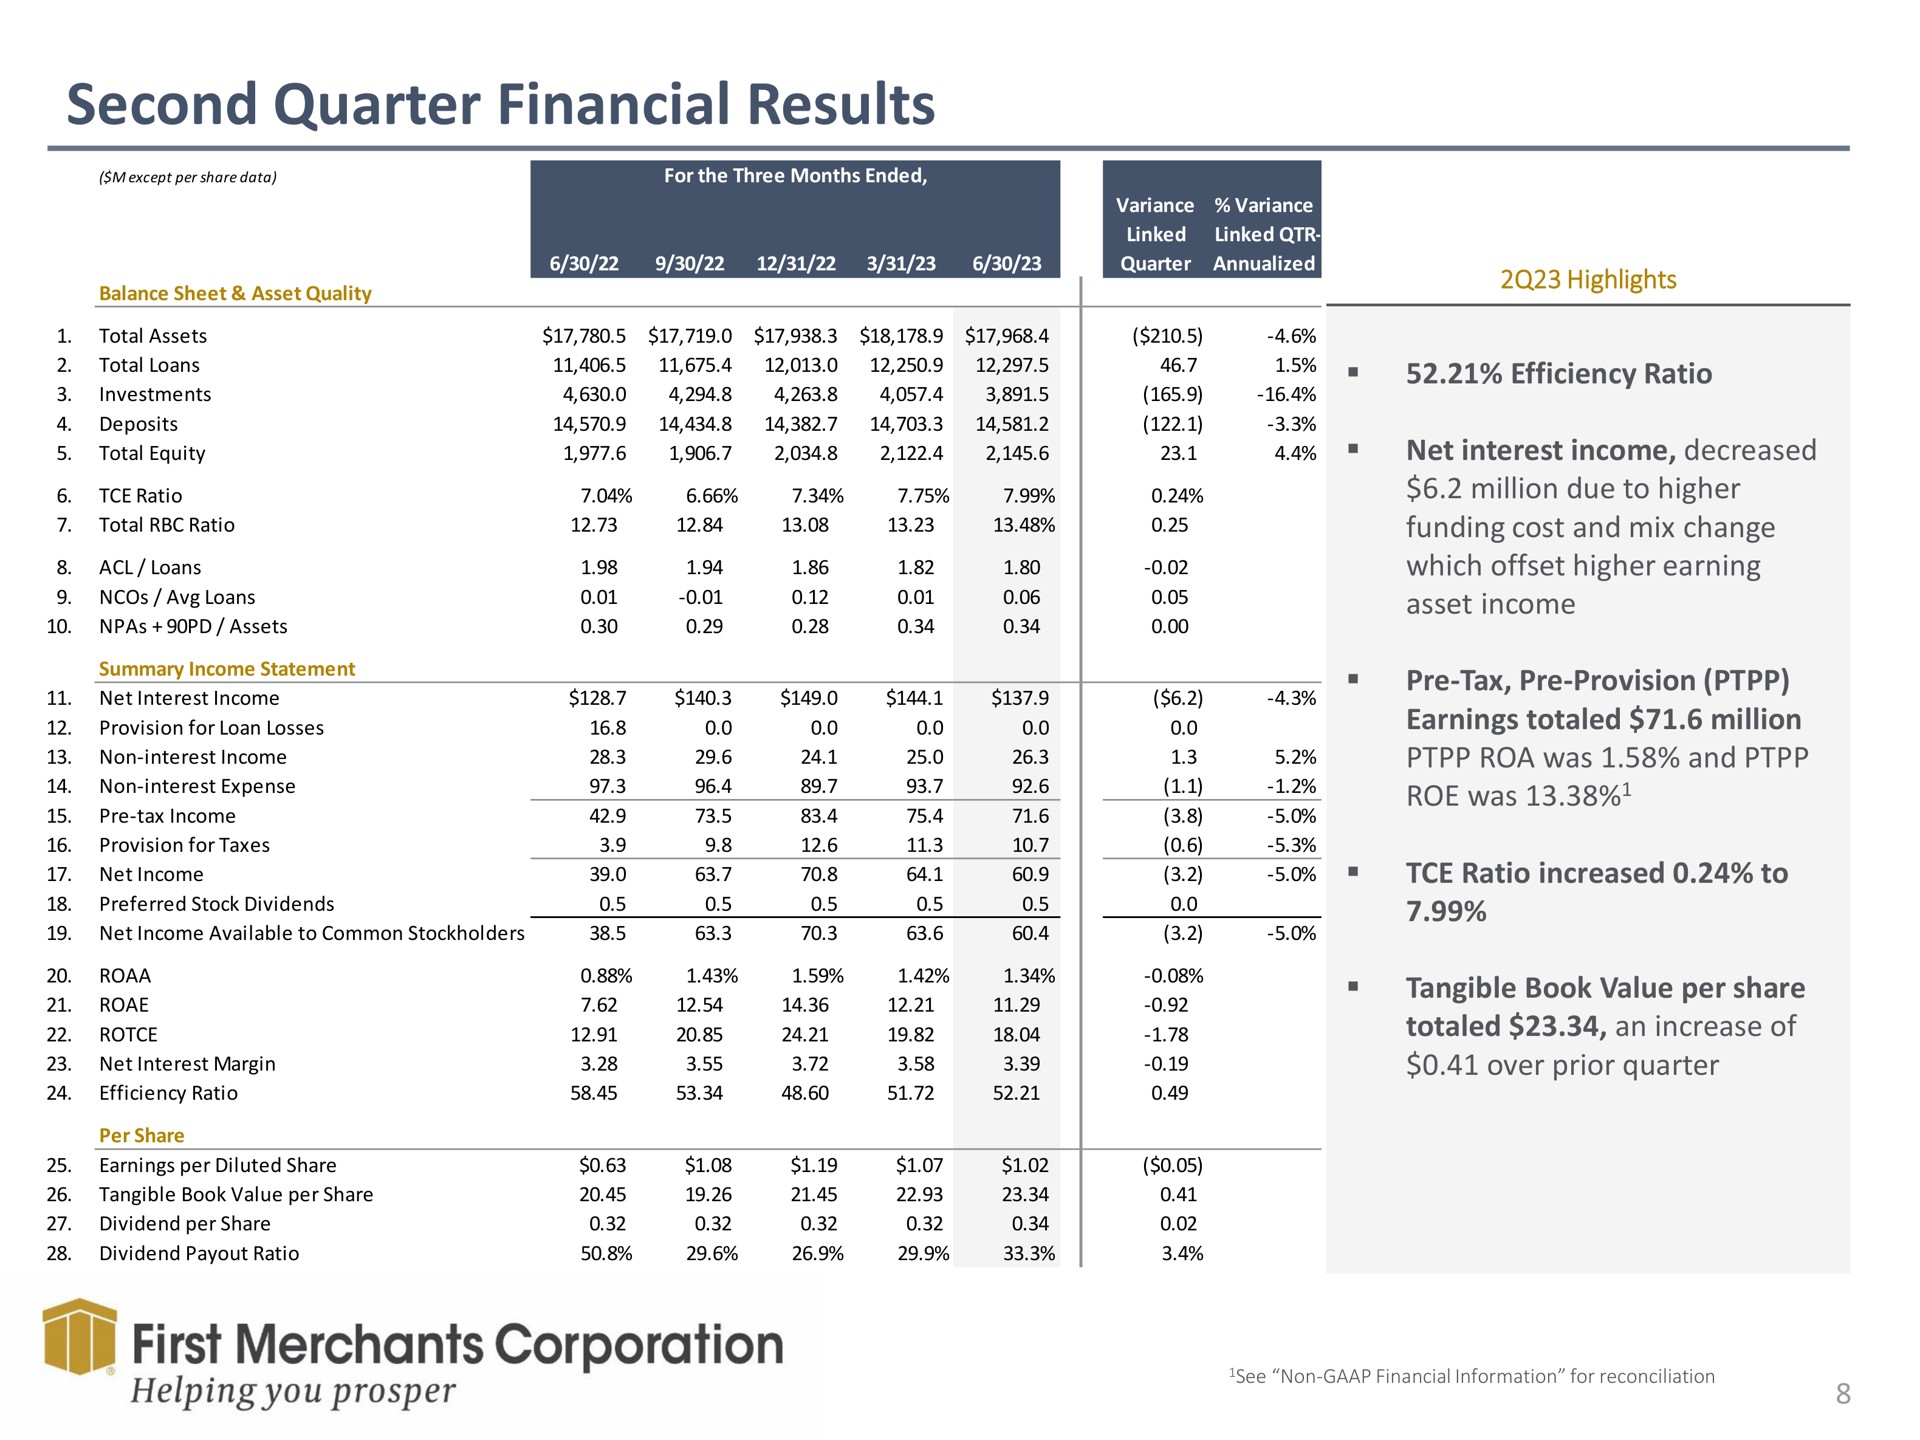 second quarter financial results me first merchants corporation be | First Merchants